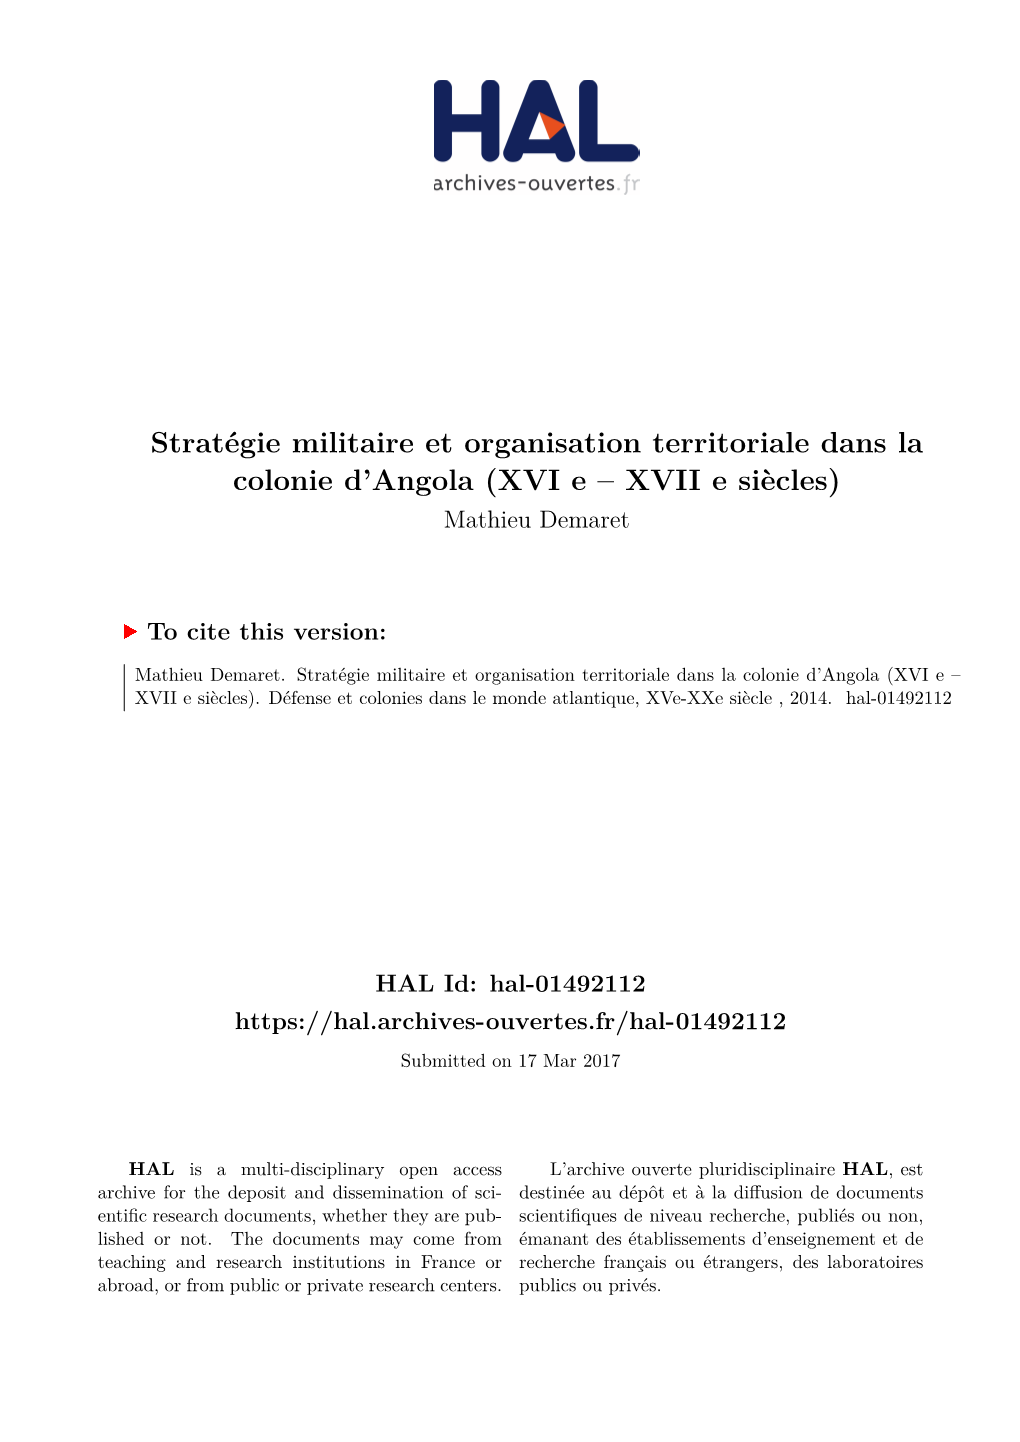 Stratégie Militaire Et Organisation Territoriale Dans La Colonie D’Angola (XVI E – XVII E Siècles) Mathieu Demaret